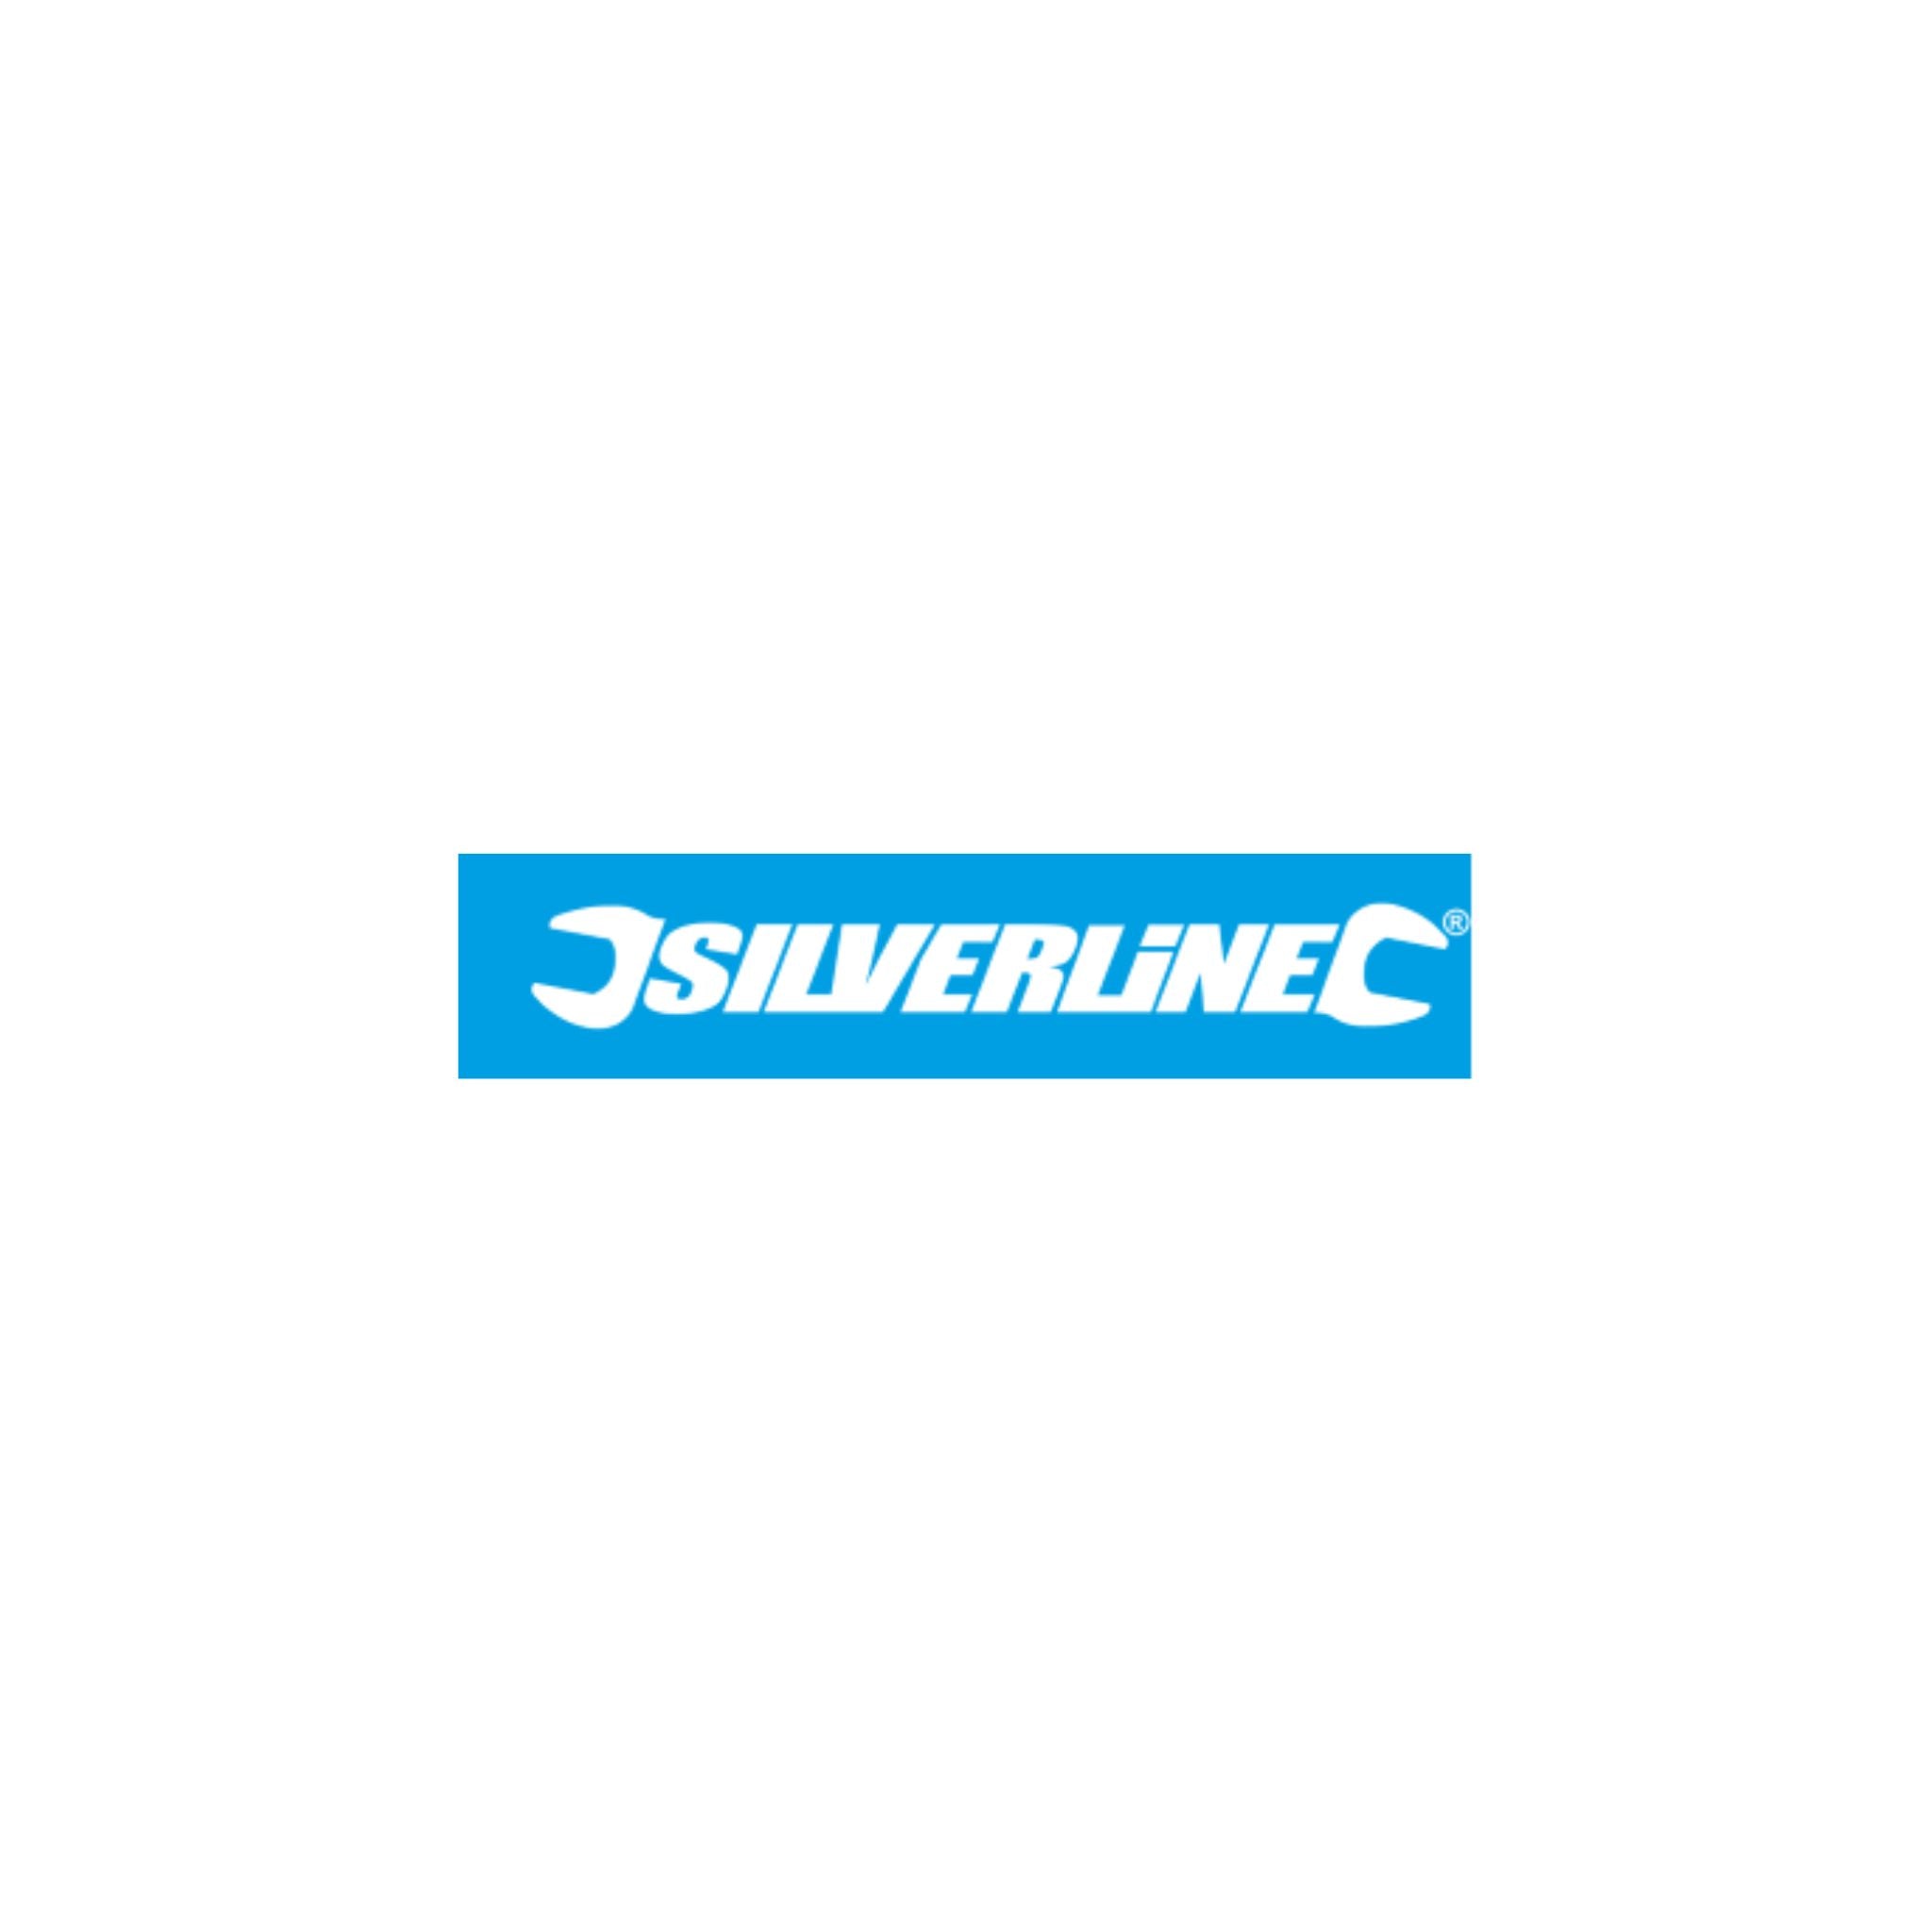 Silverline Brand Logo